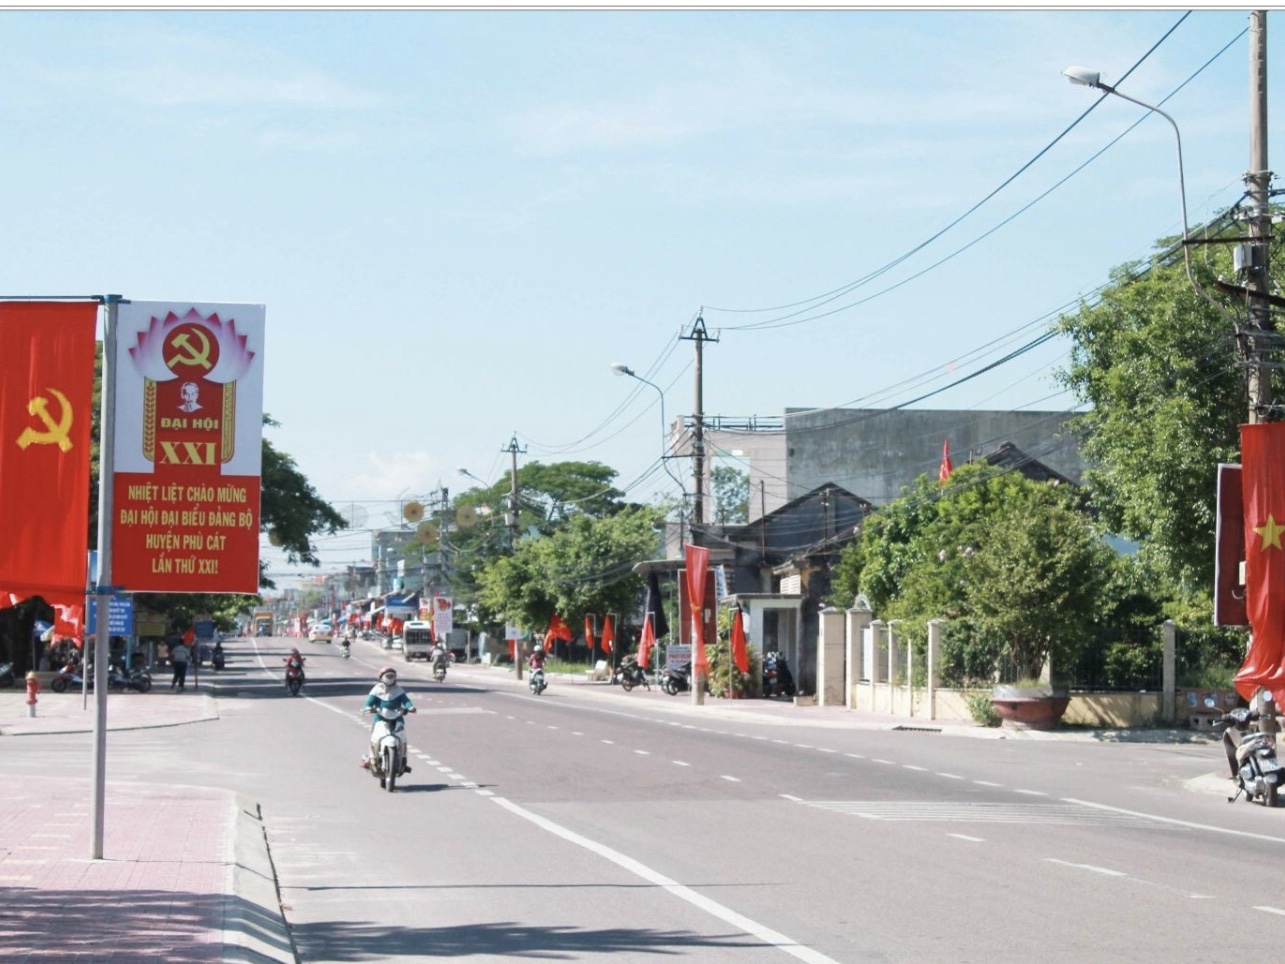 Hình ảnh: Bình Định: Huyện Phù Cát đạt chuẩn nông thôn mới số 1